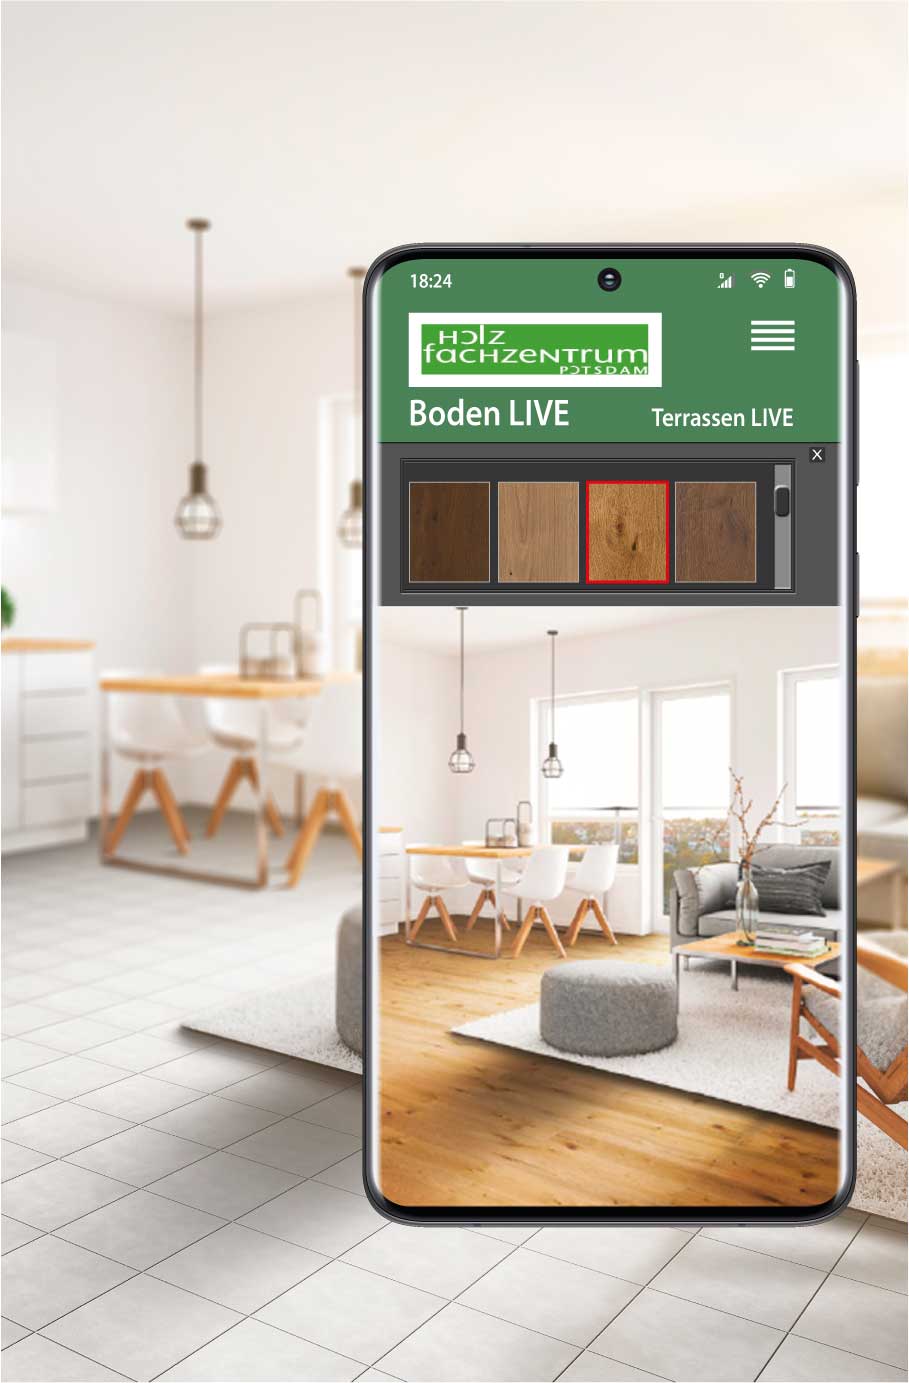 Smartphone mit Ansicht eines Bodenbelages - klicken Sie auf das Bild und gelangen Sie zu Boden LIVE vom Holzfachzentrum Potsdam